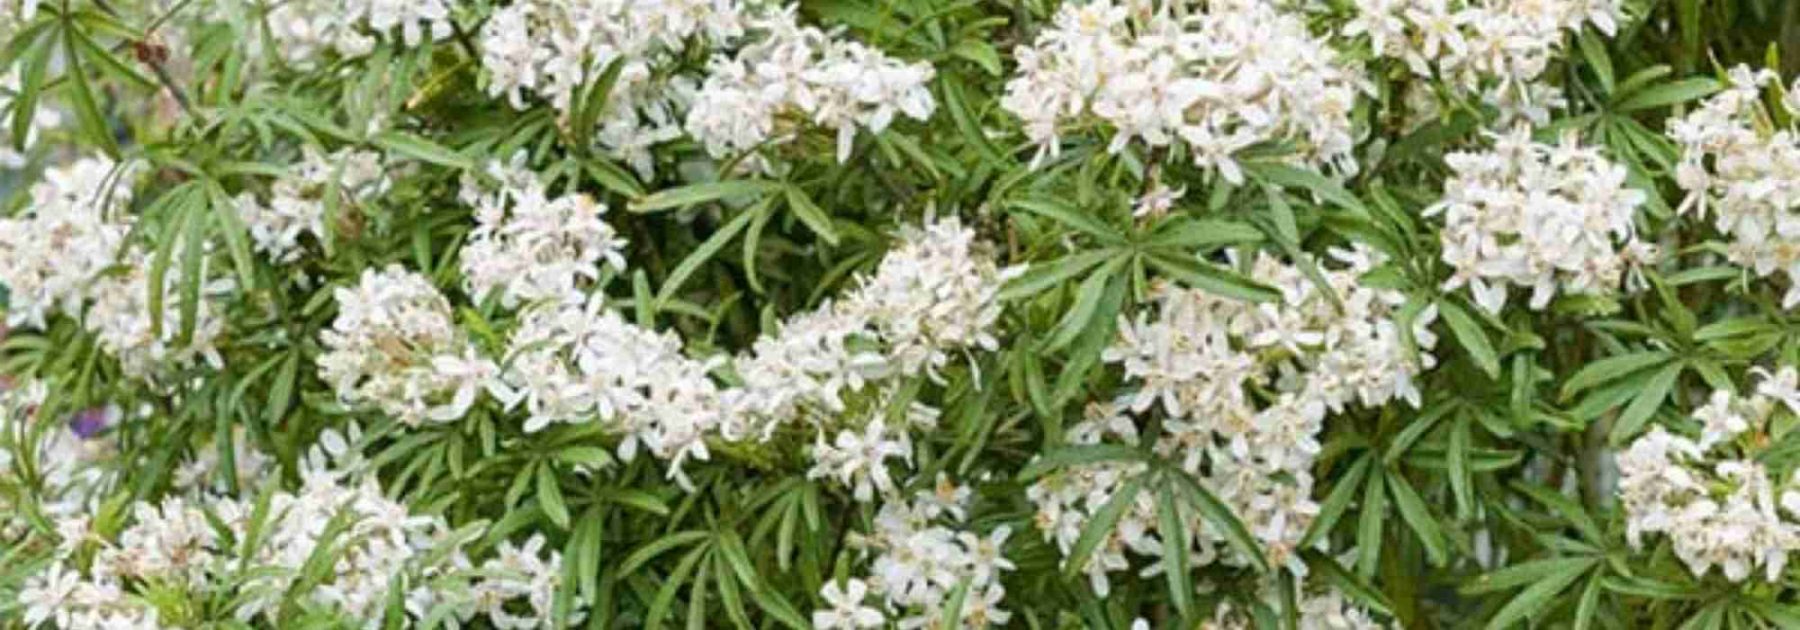 Des fleurs blanches odorantes pour votre balcon ou terrasse